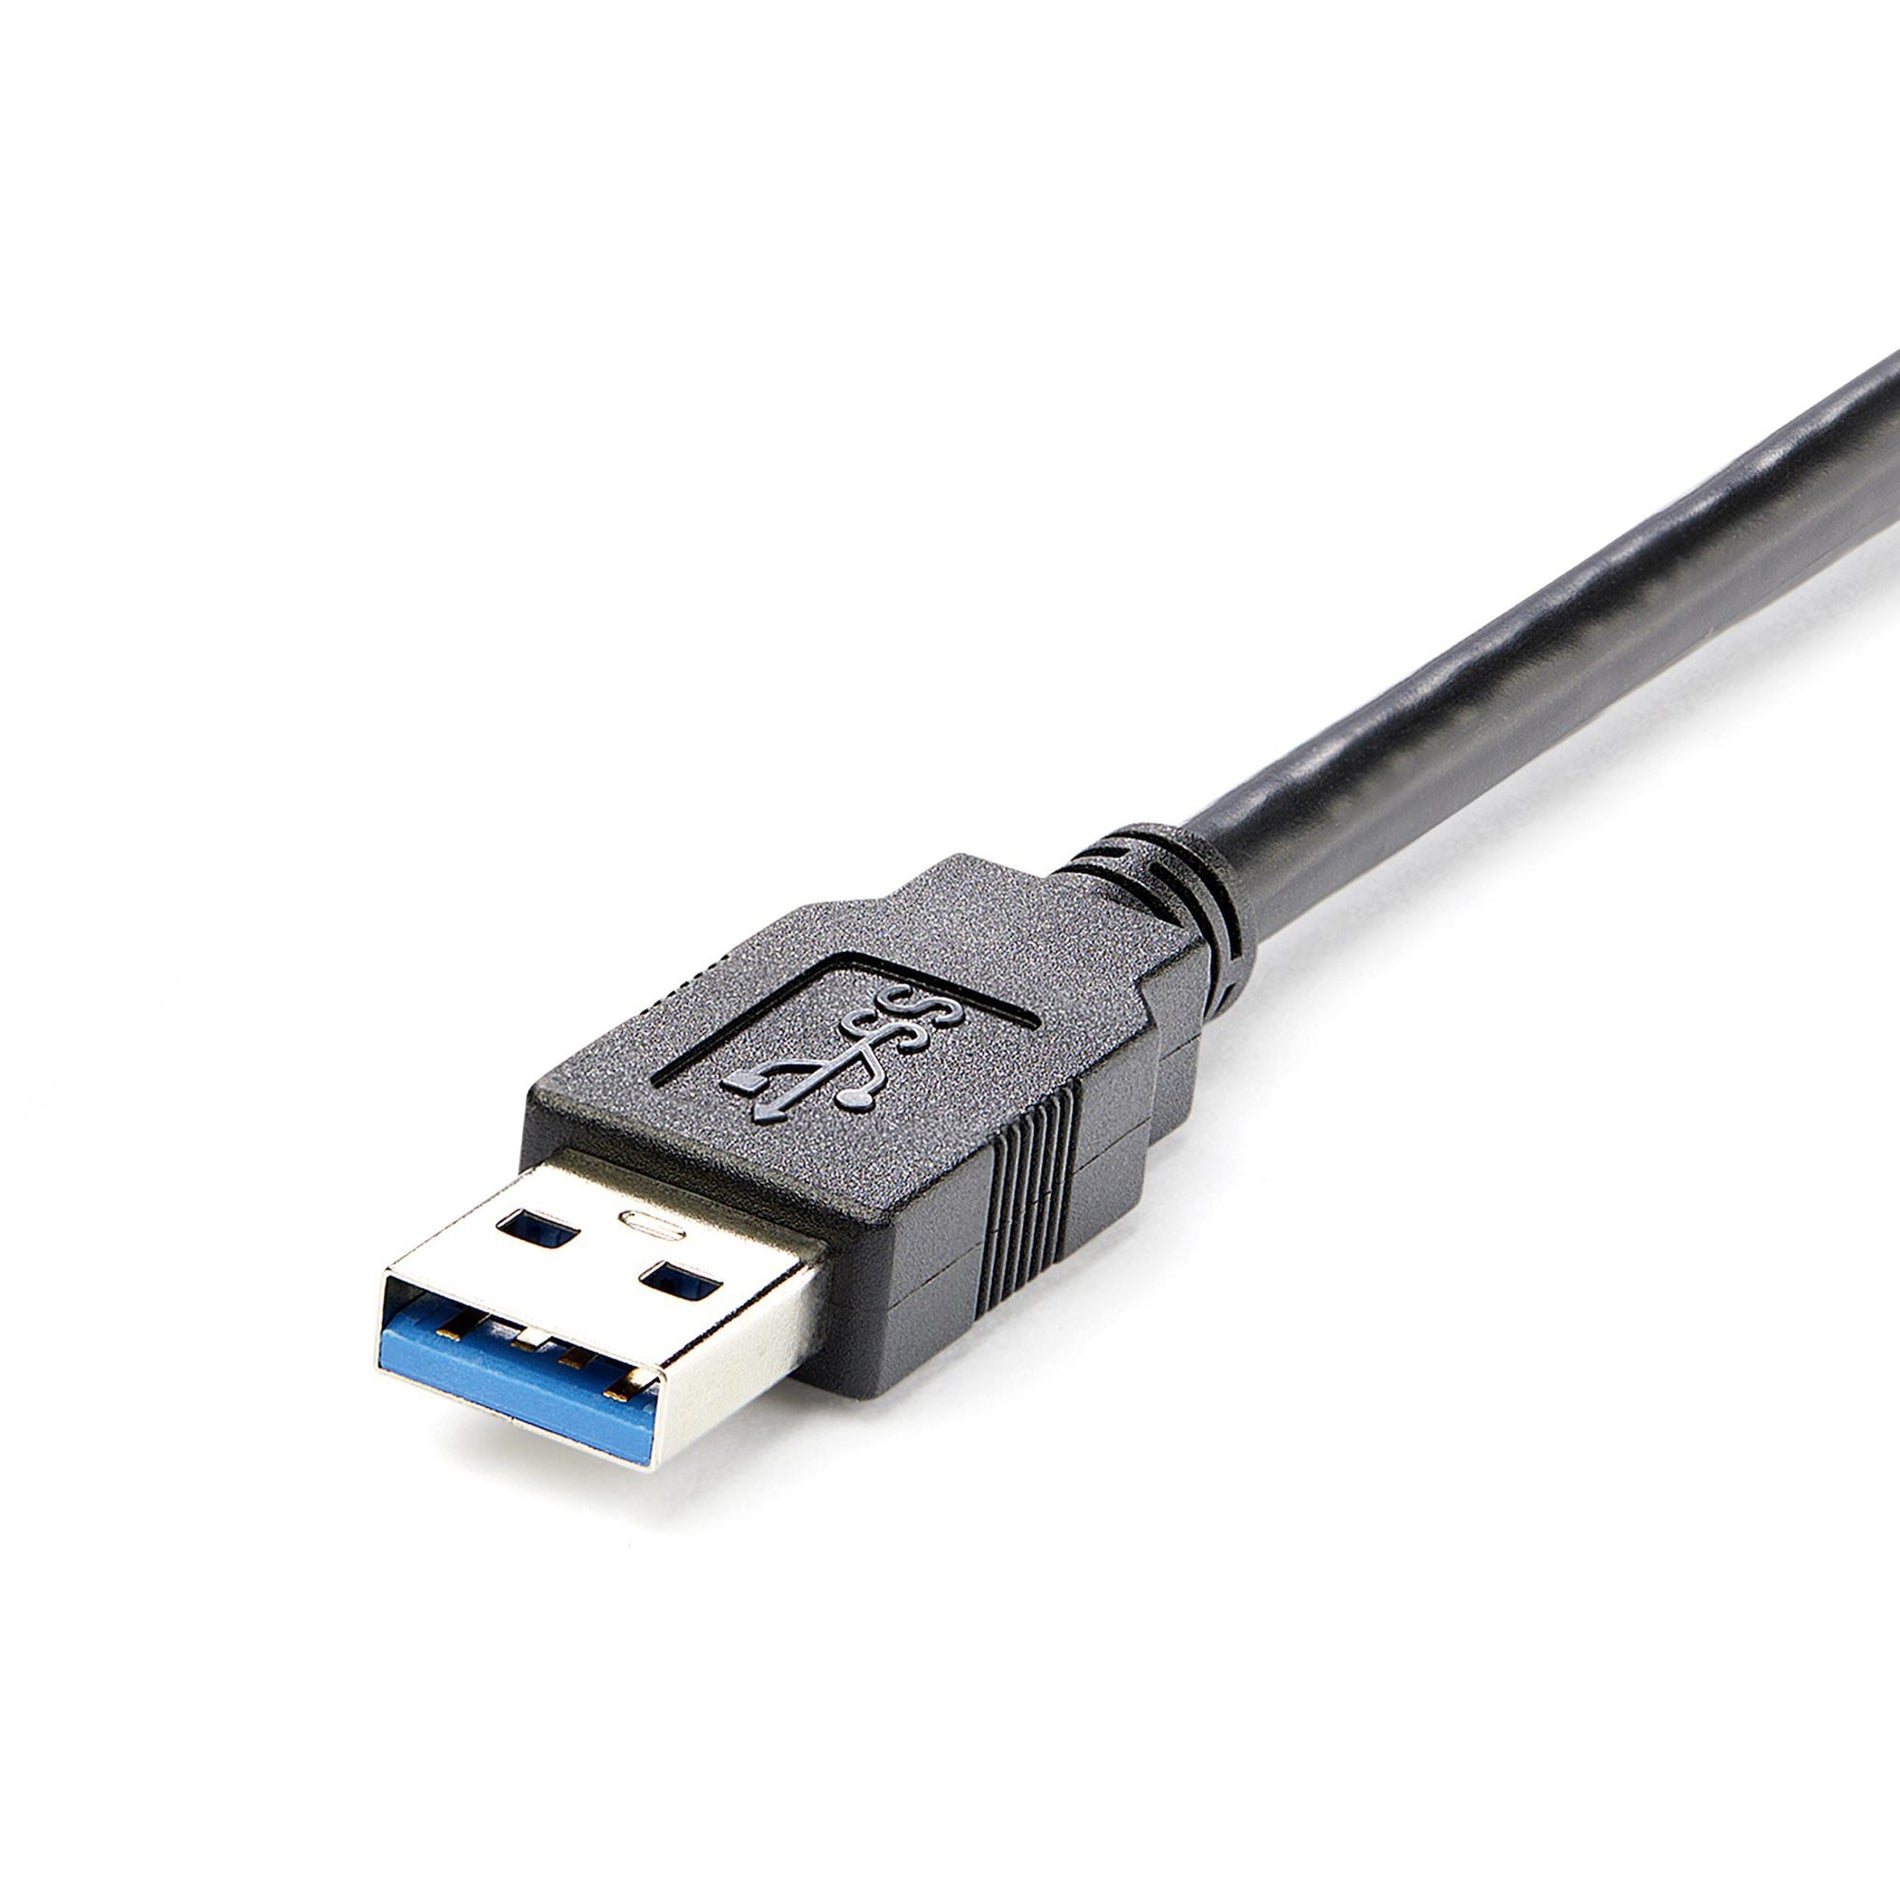 StarTech.com كابل تمديد USB 3.0 سوبر سبيد لسطح المكتب باللون الأسود بطول 5 أقدام، ذكر إلى أنثى، حماية EMI، معدل نقل بيانات 5 جيجابت في الثانية